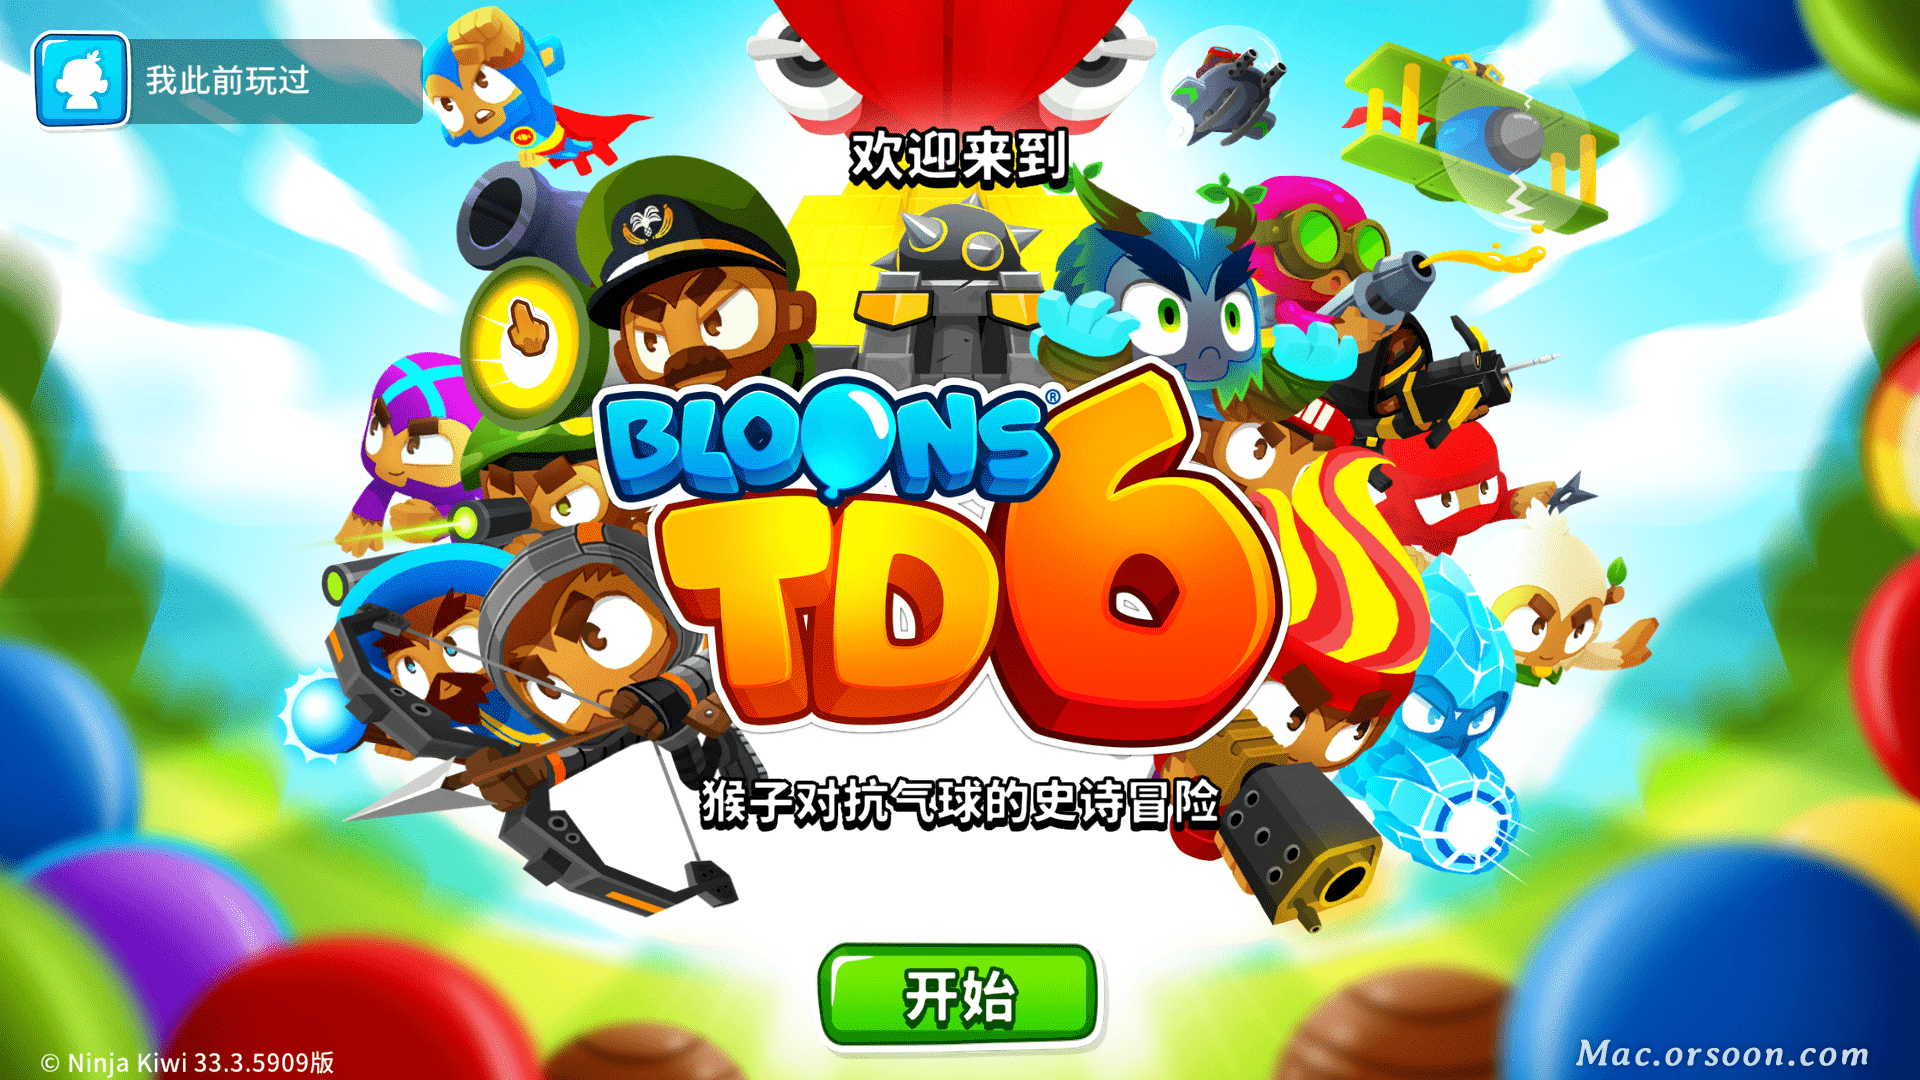 猴子塔防中文破解版苹果:超人气气球塔防游戏：BloonsTD6中文